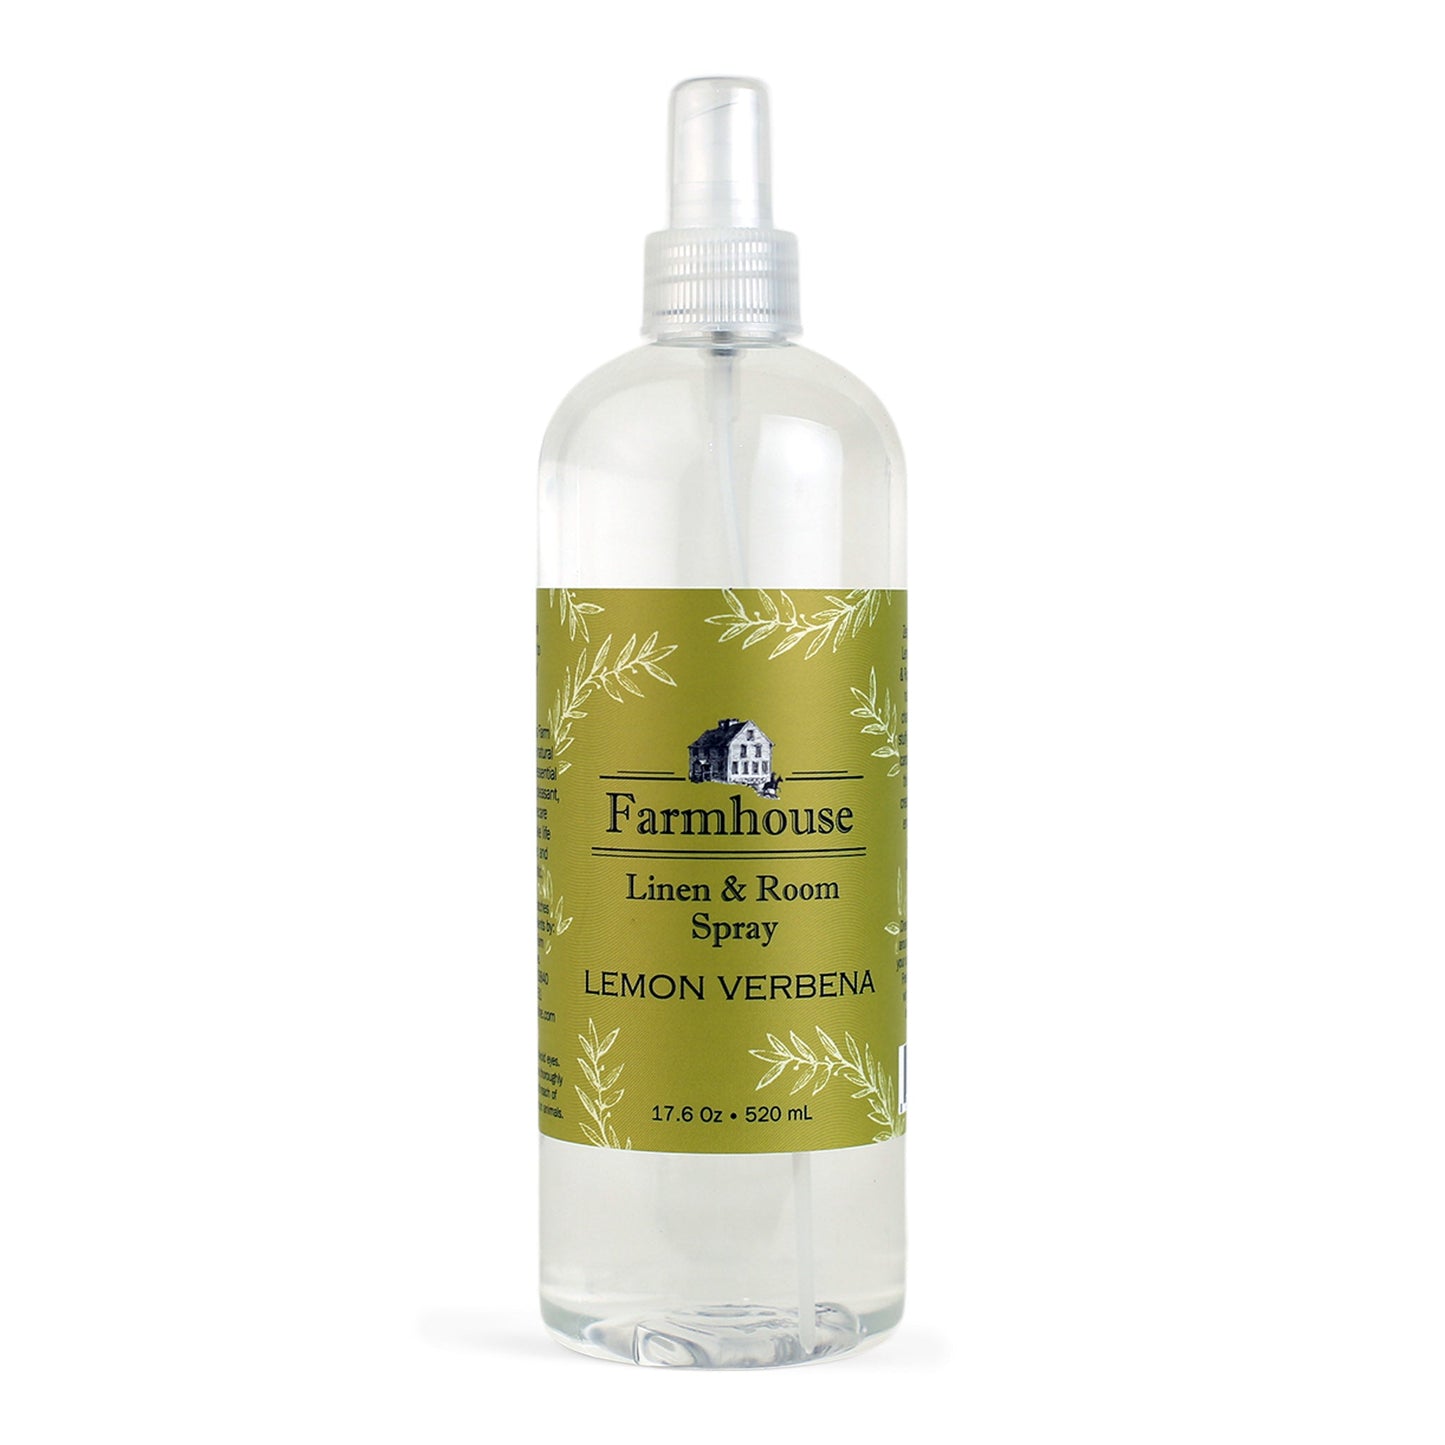 All-Natural Room & Linen Freshening Spray